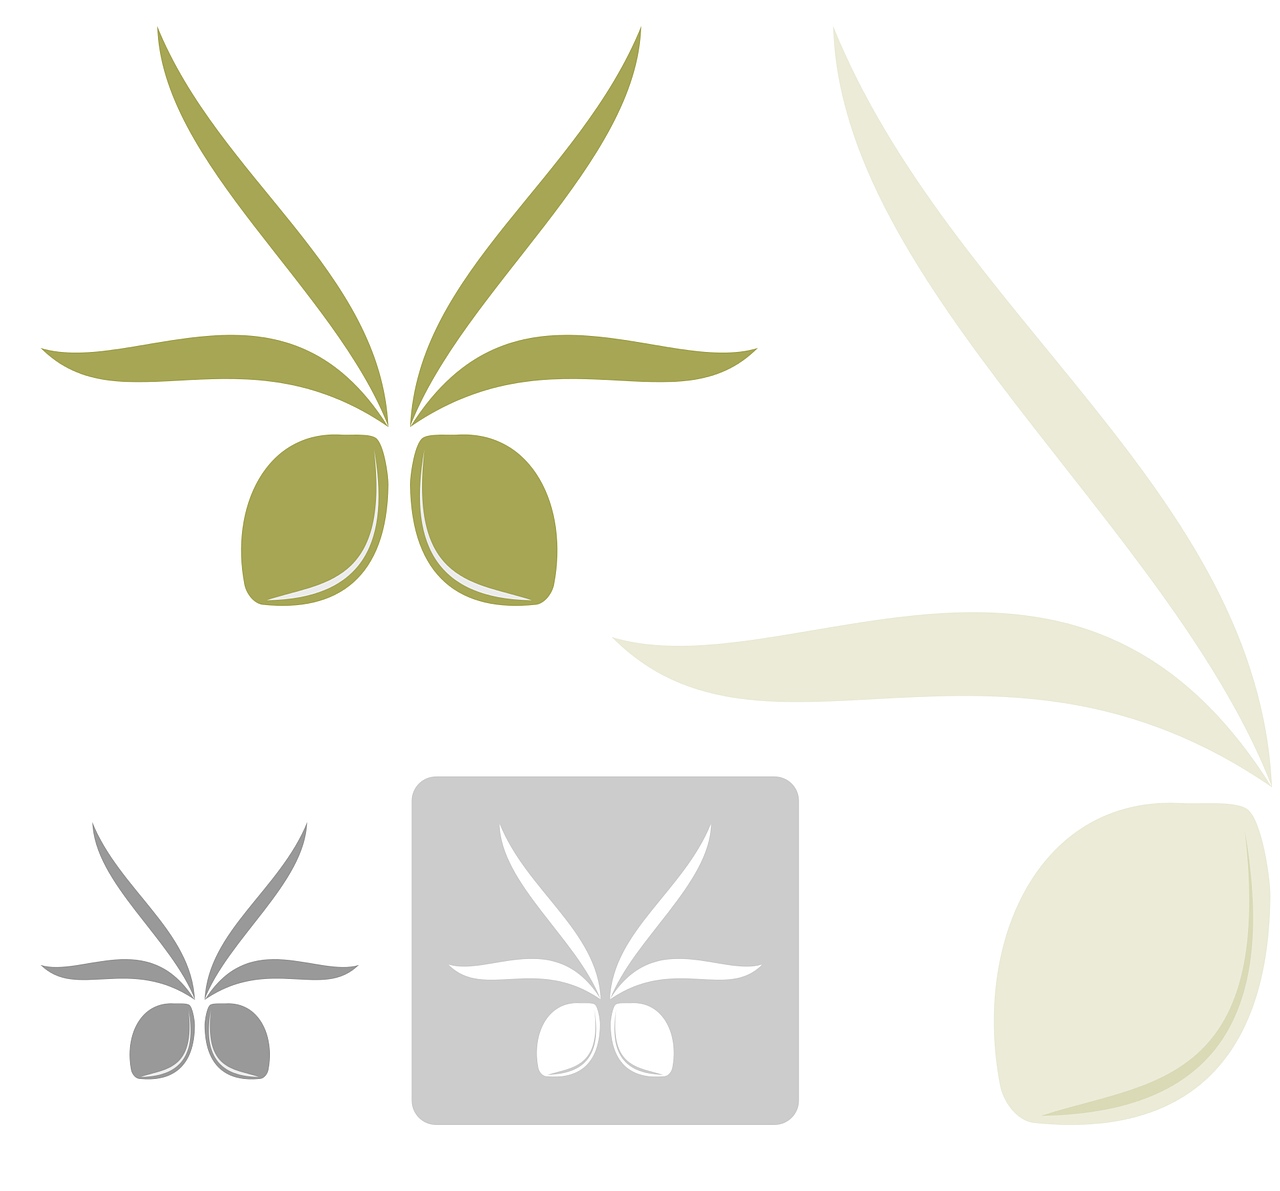 ¿Qué significado tiene las hojas de olivo?